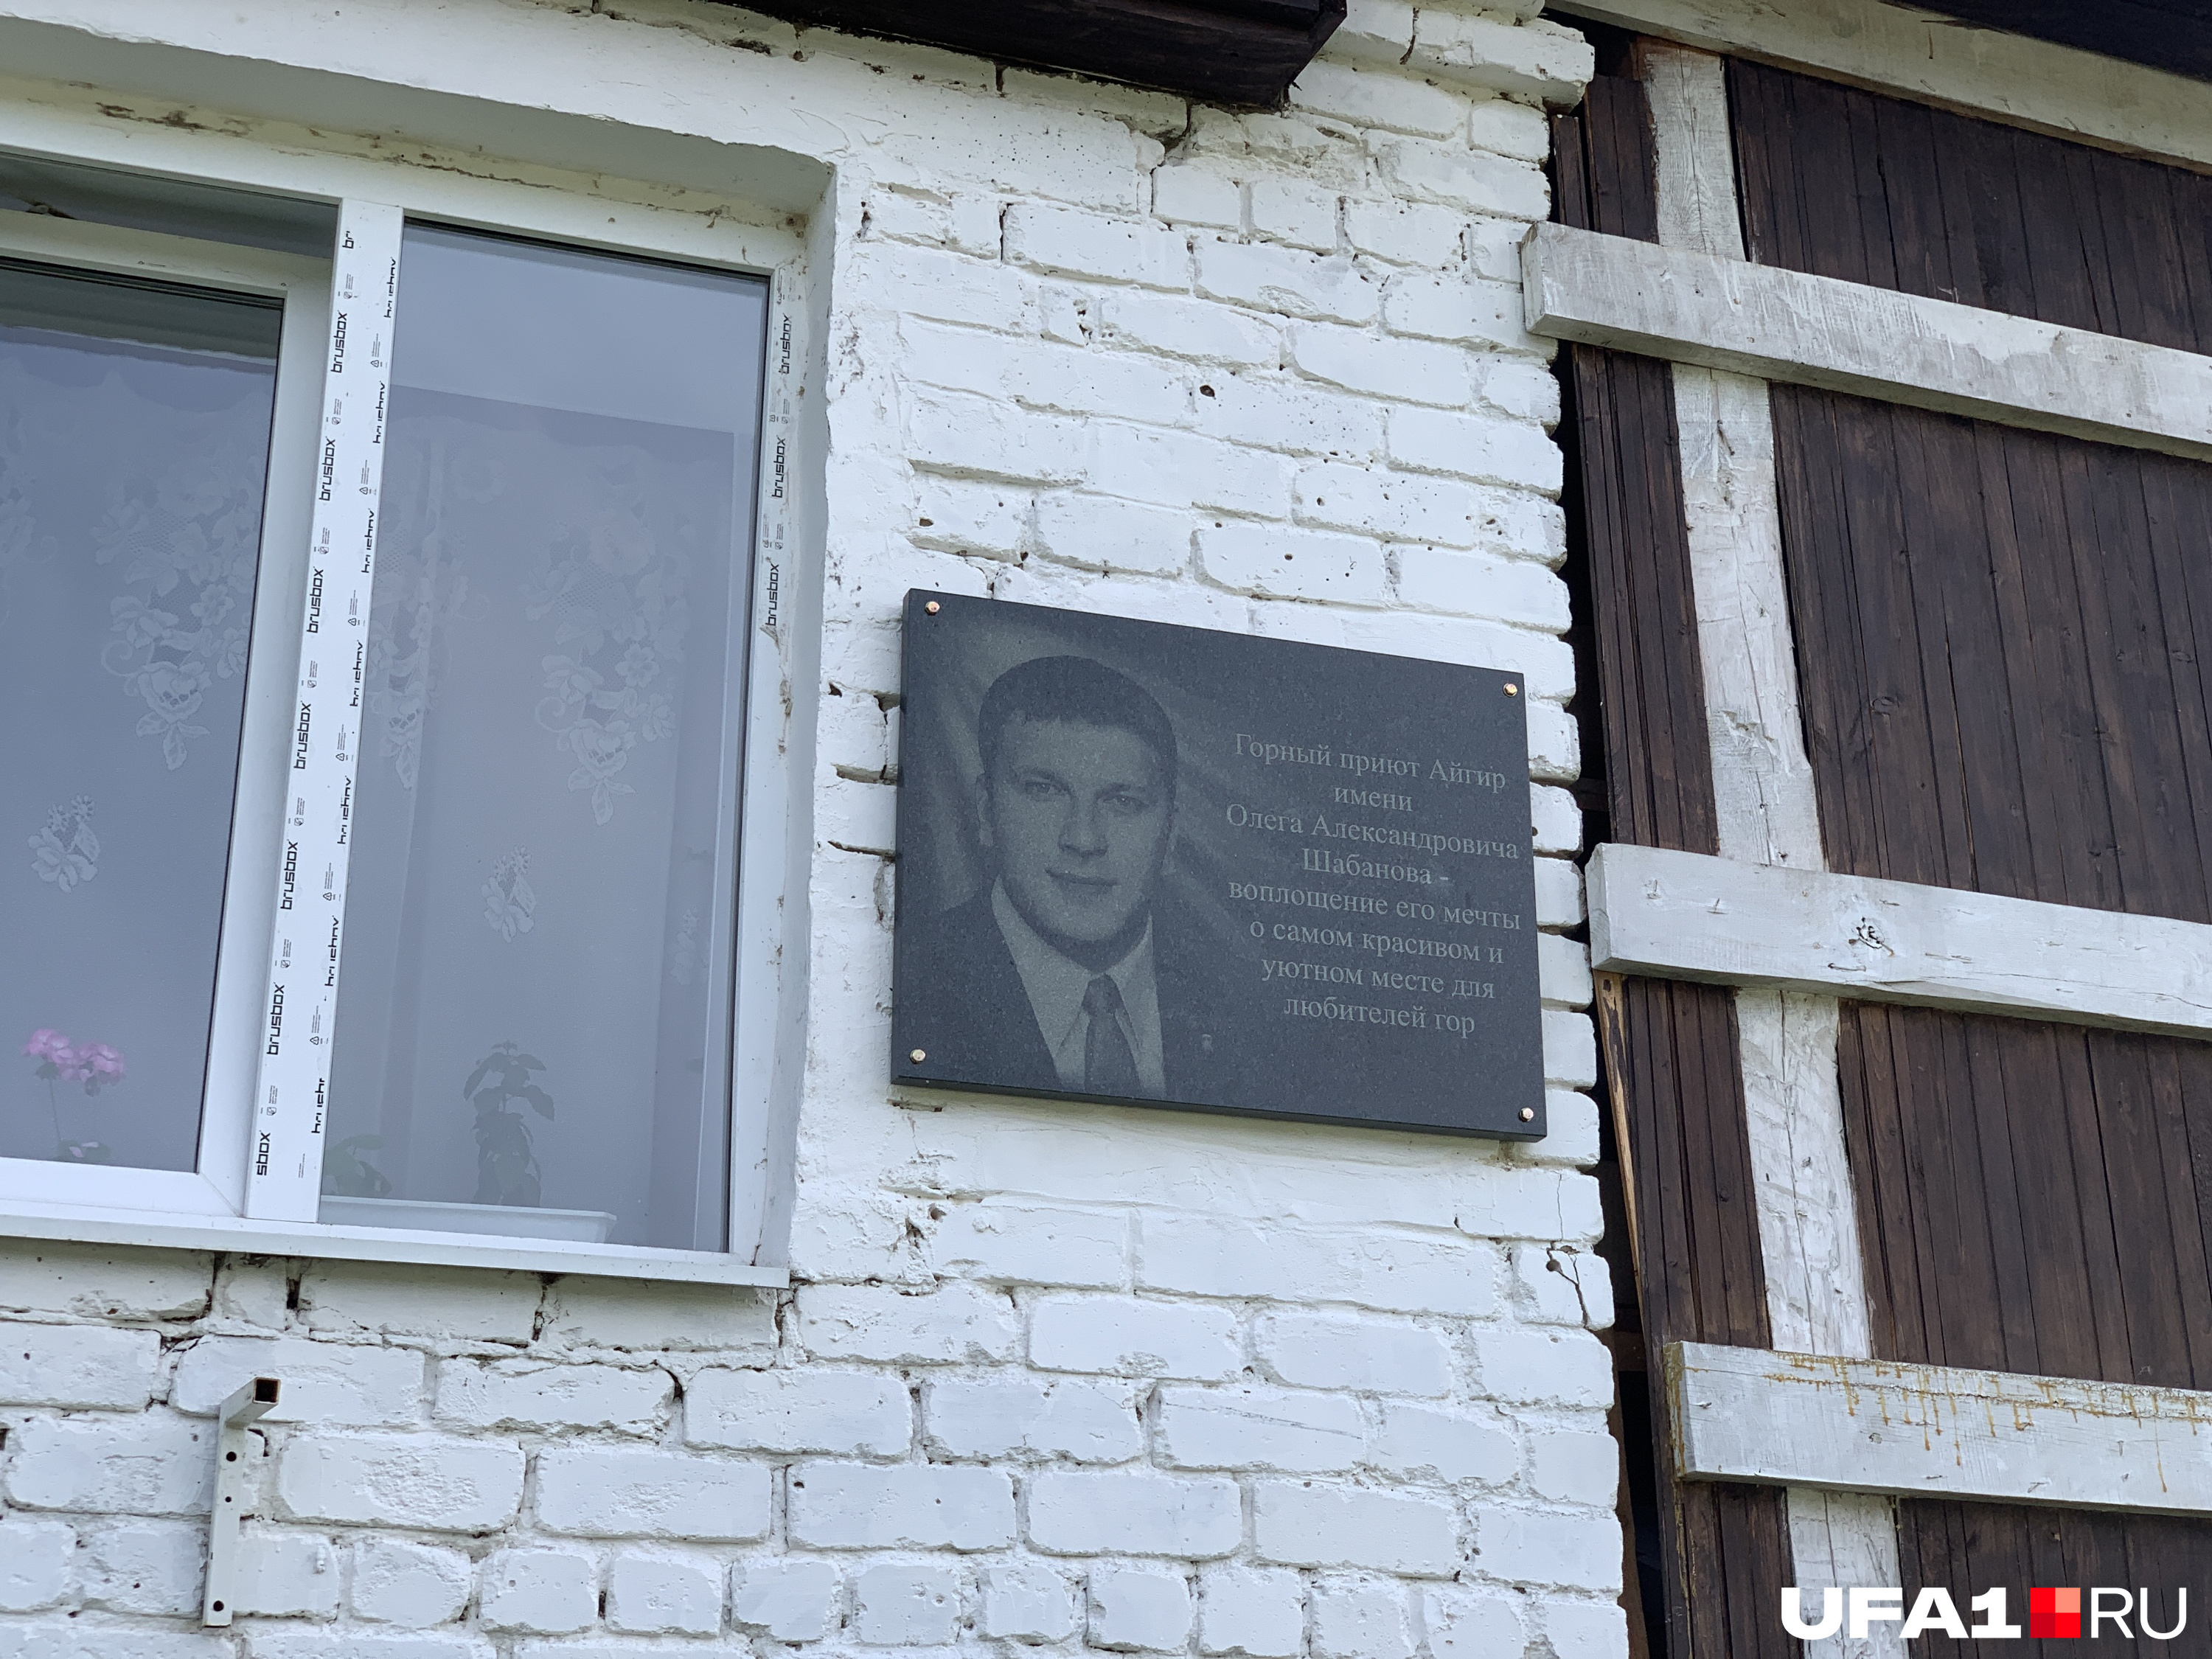 В память о нем осталась мемориальная табличка на главном здании — правда, без описания его деятельности